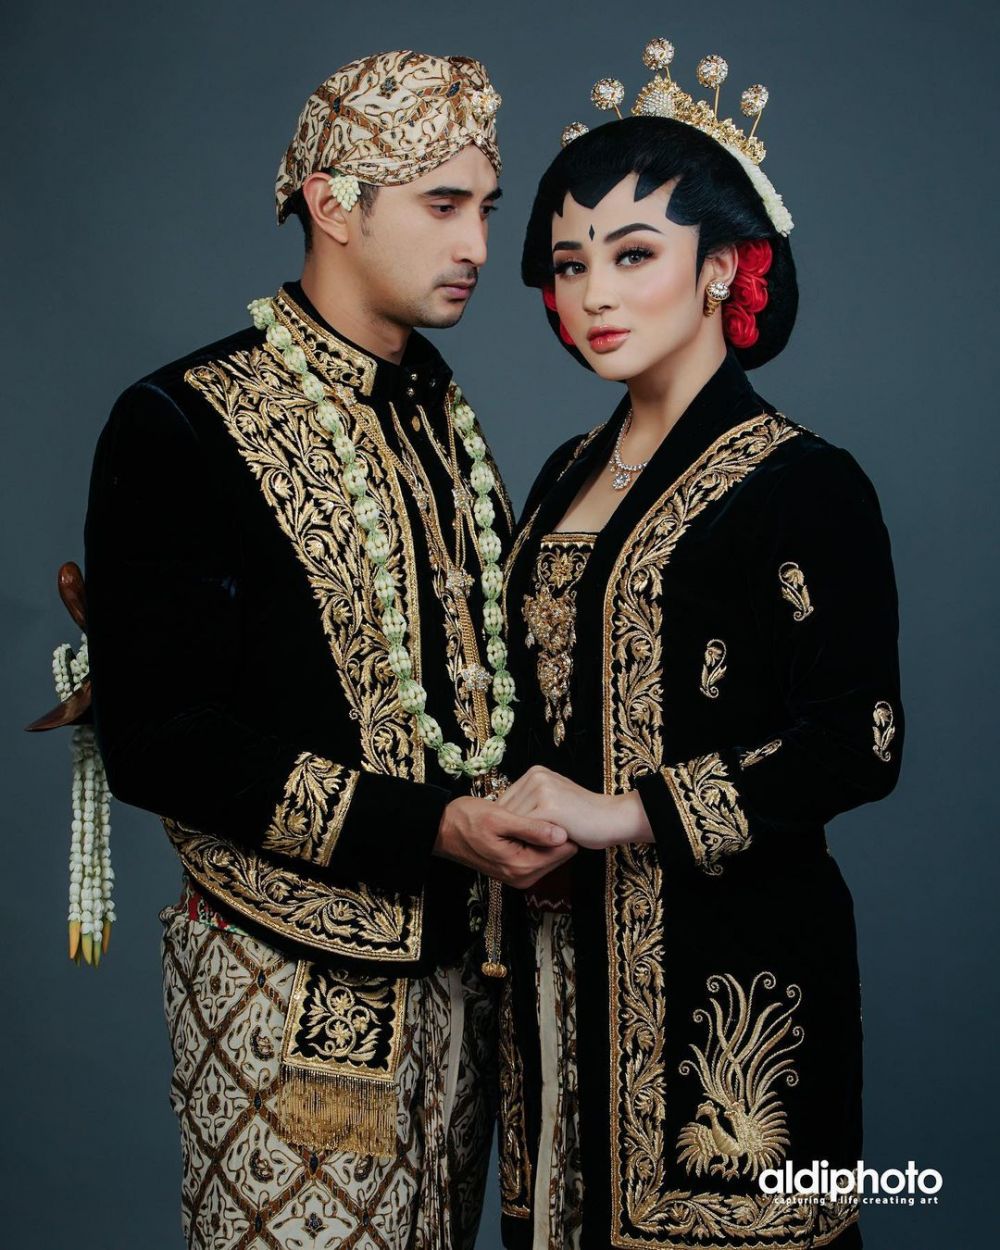 Penampilan 7 pasangan seleb dandan ala pengantin Jawa, manglingi